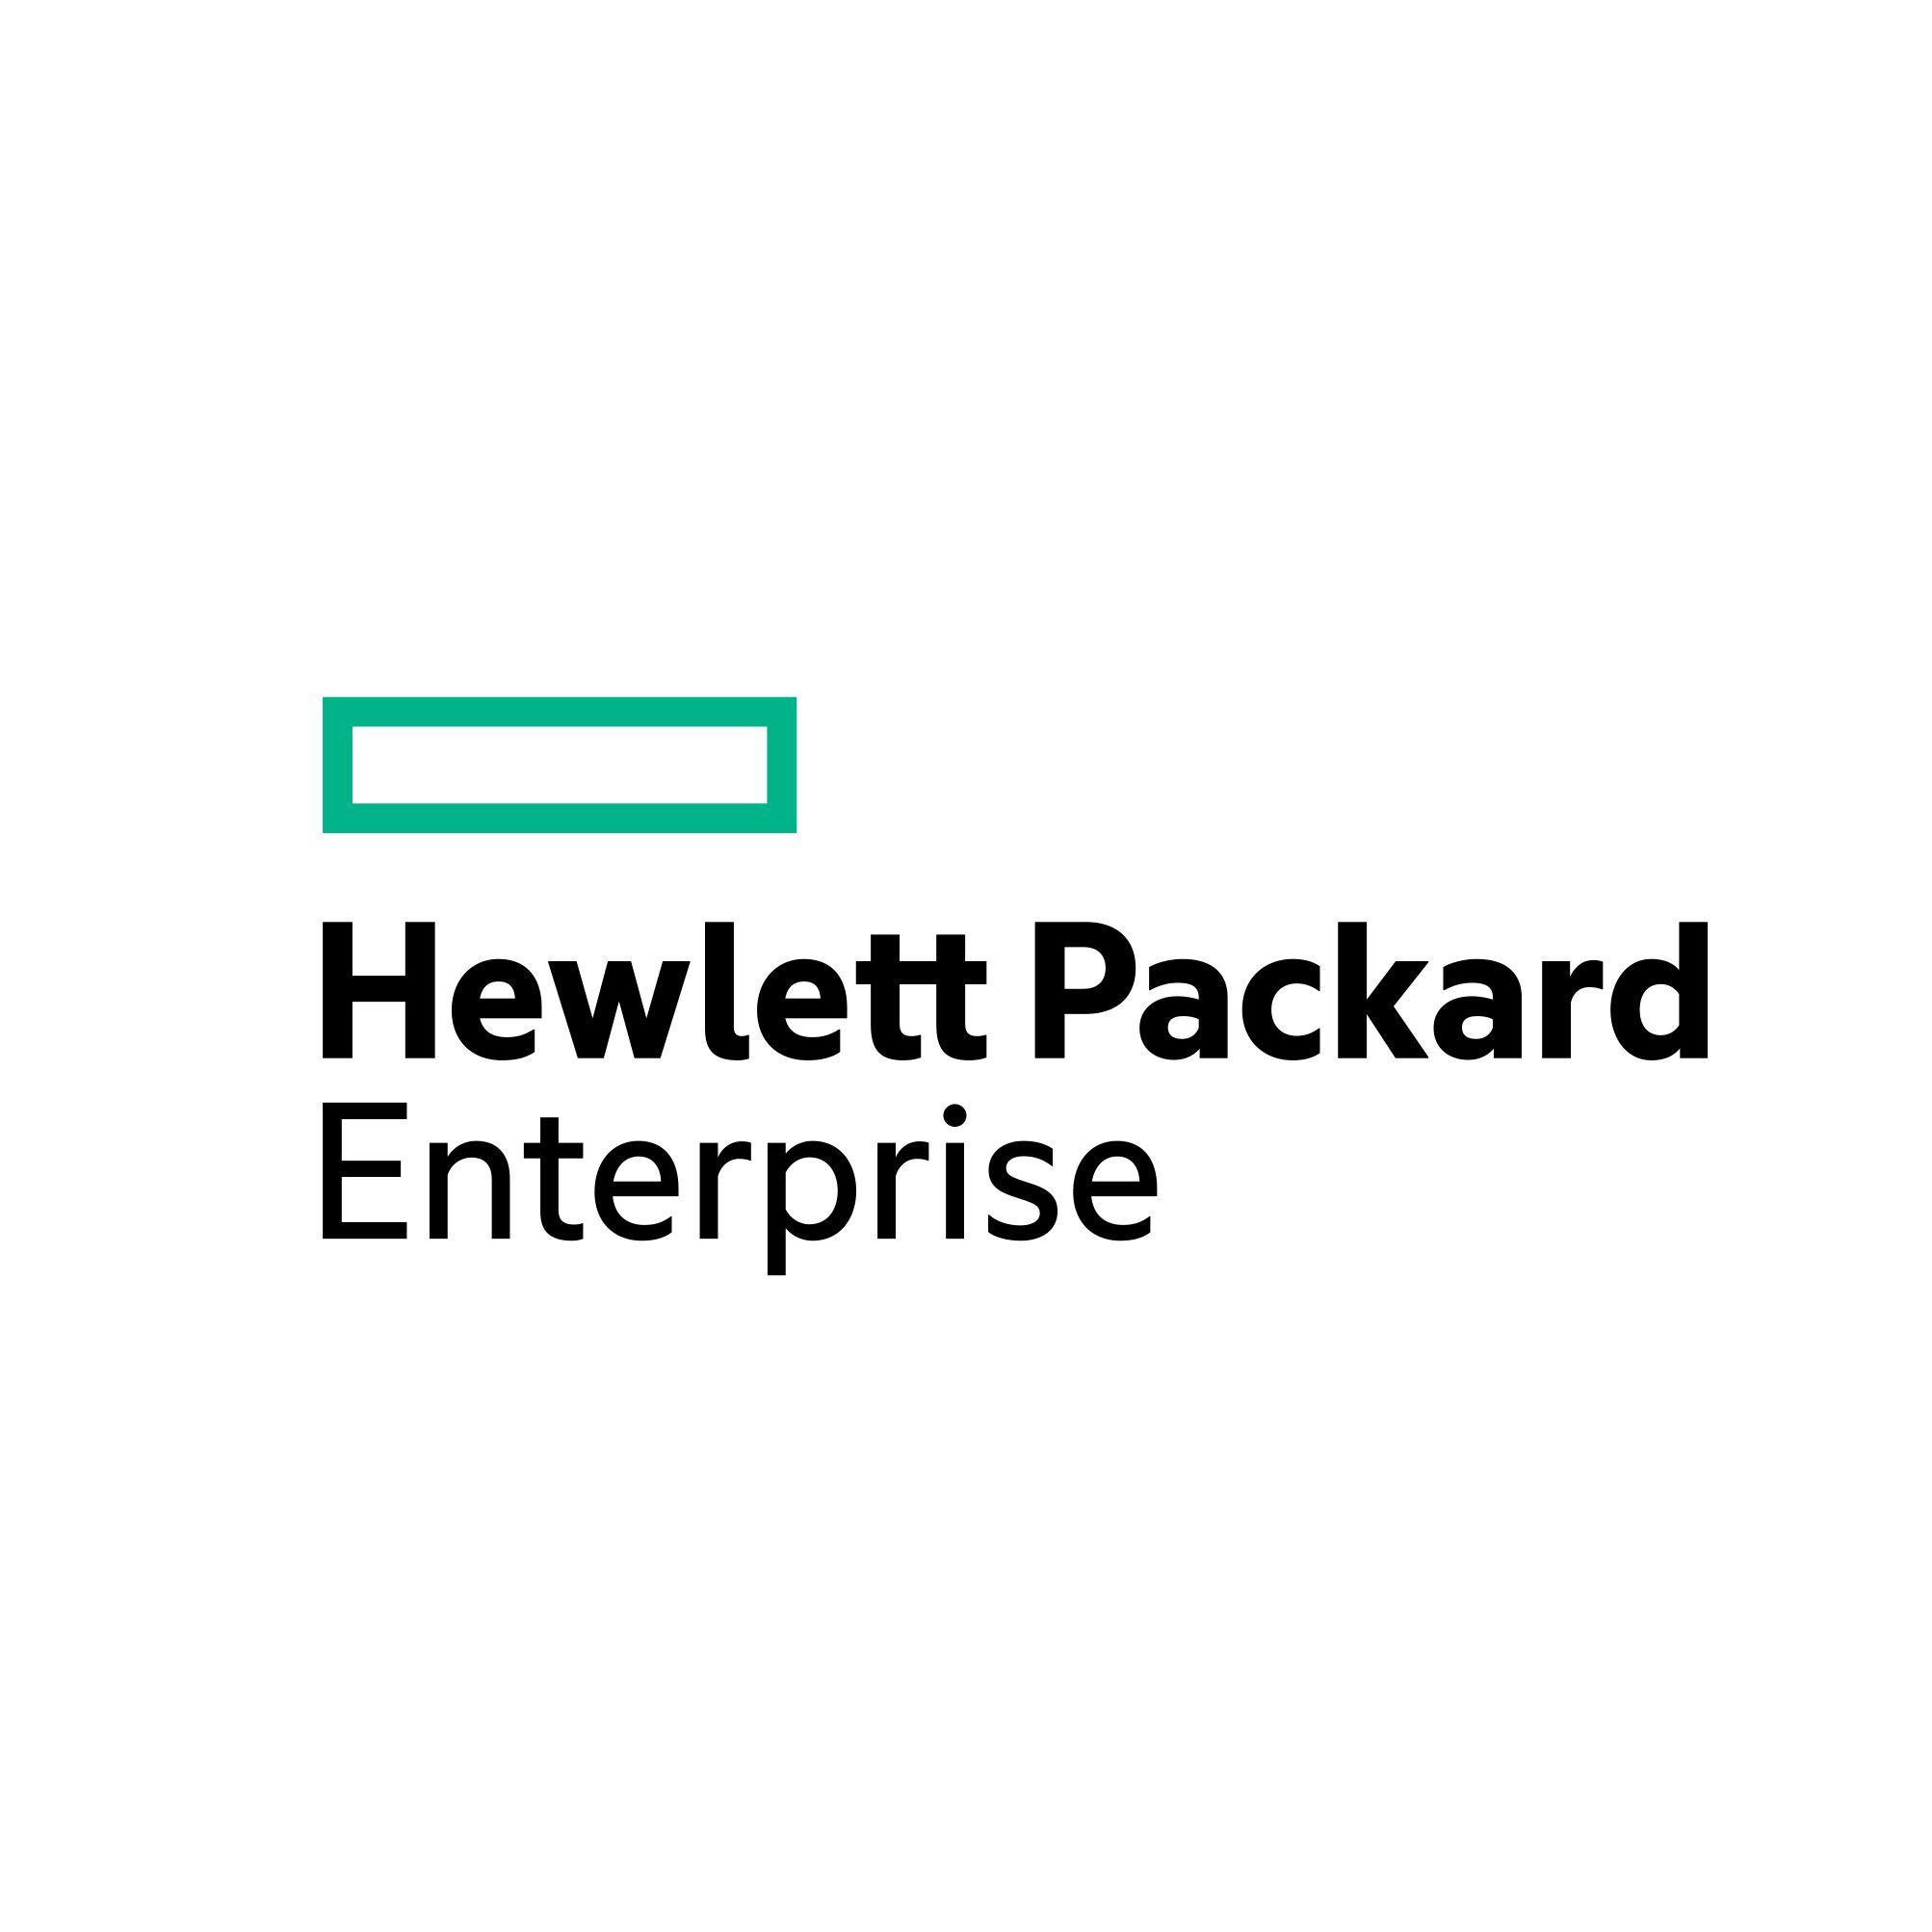 HP Official Logo - Hewlett Packard Enterprise (HPE)